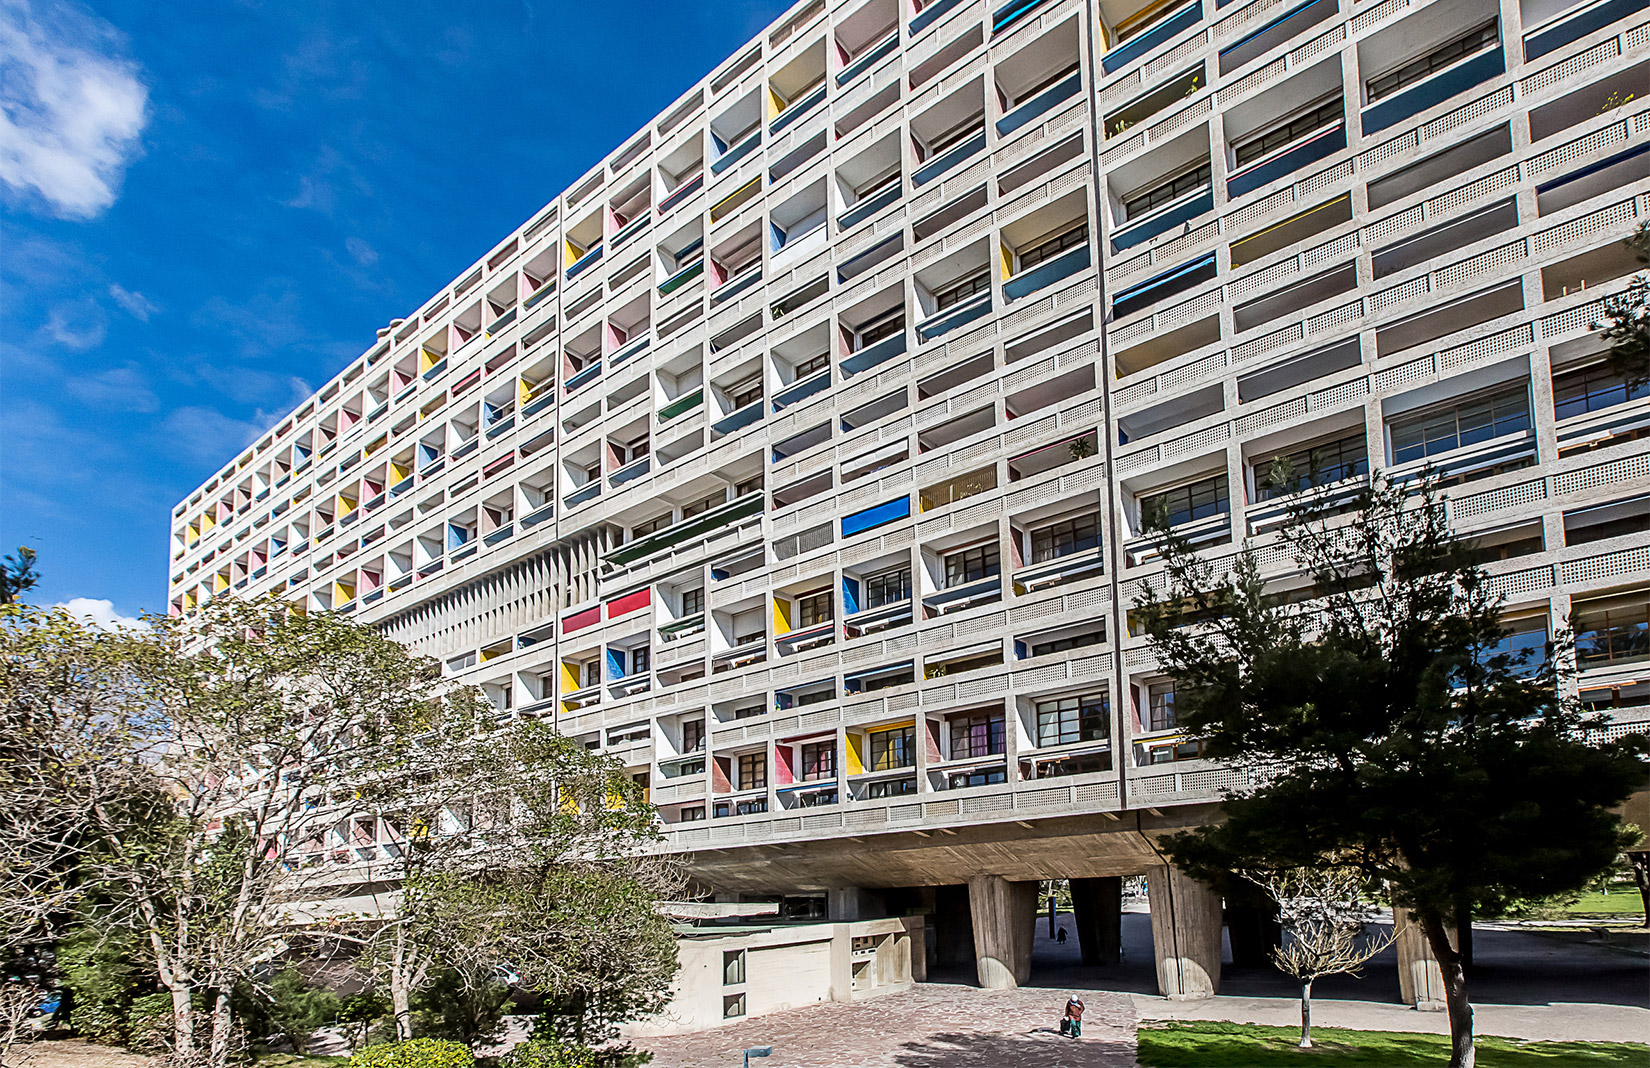 Duplex G Cite Radieuse Marseilles by Architecture de Collection